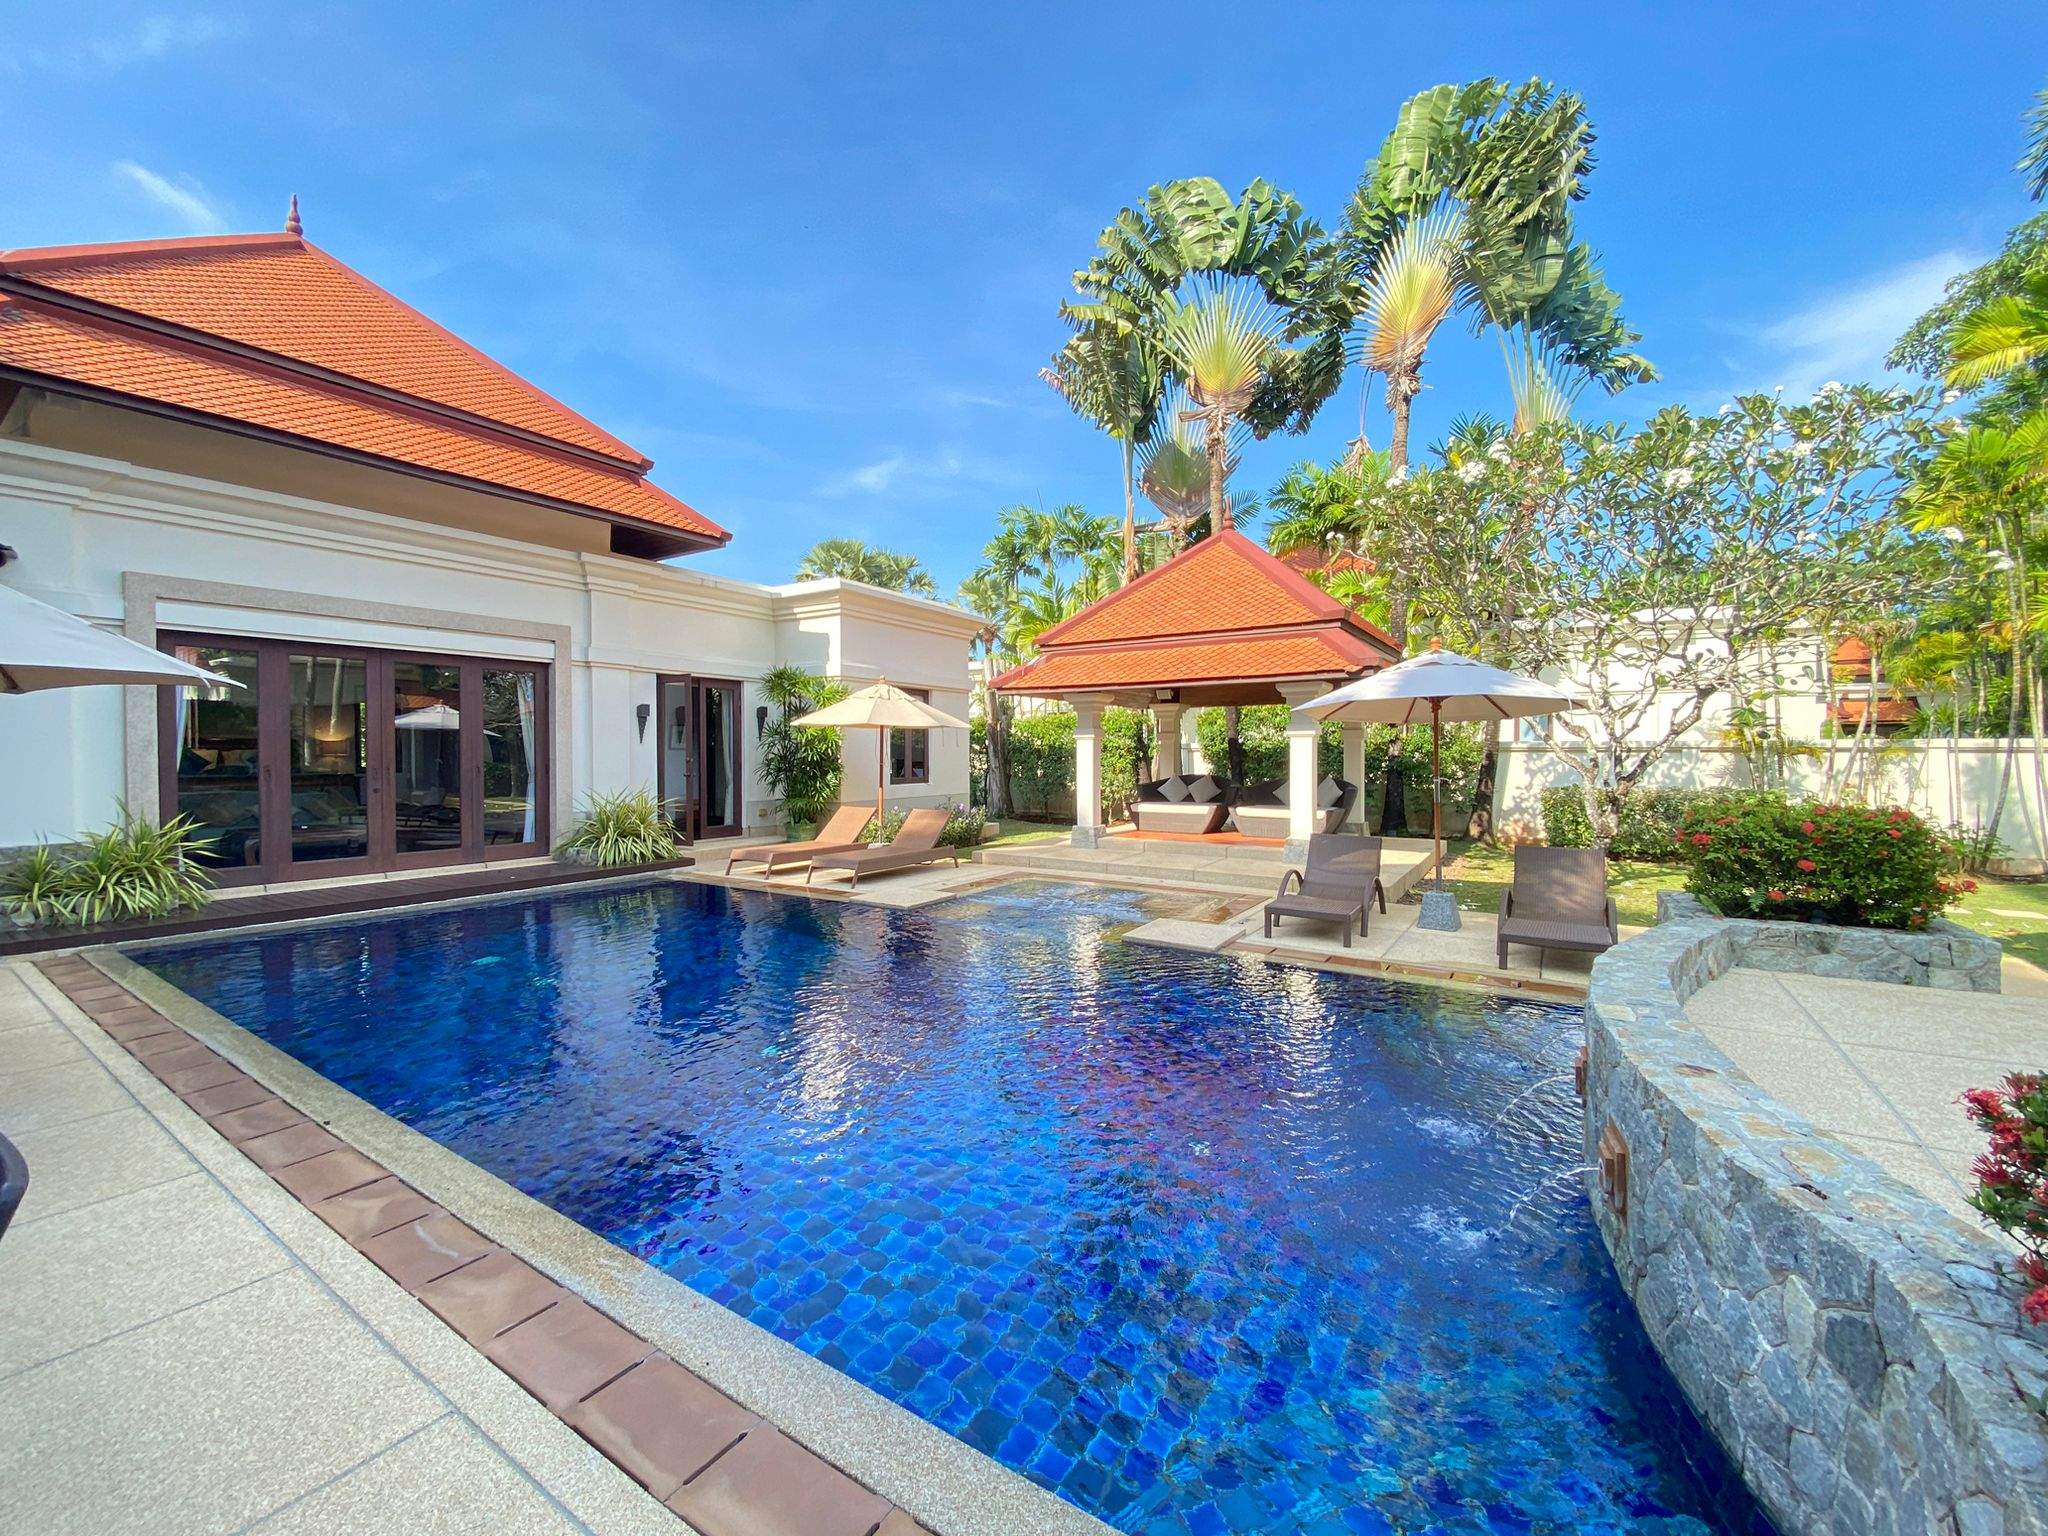 Rent villa Sai Taan 18, Thailand, Phuket, Bang Tao | Villacarte